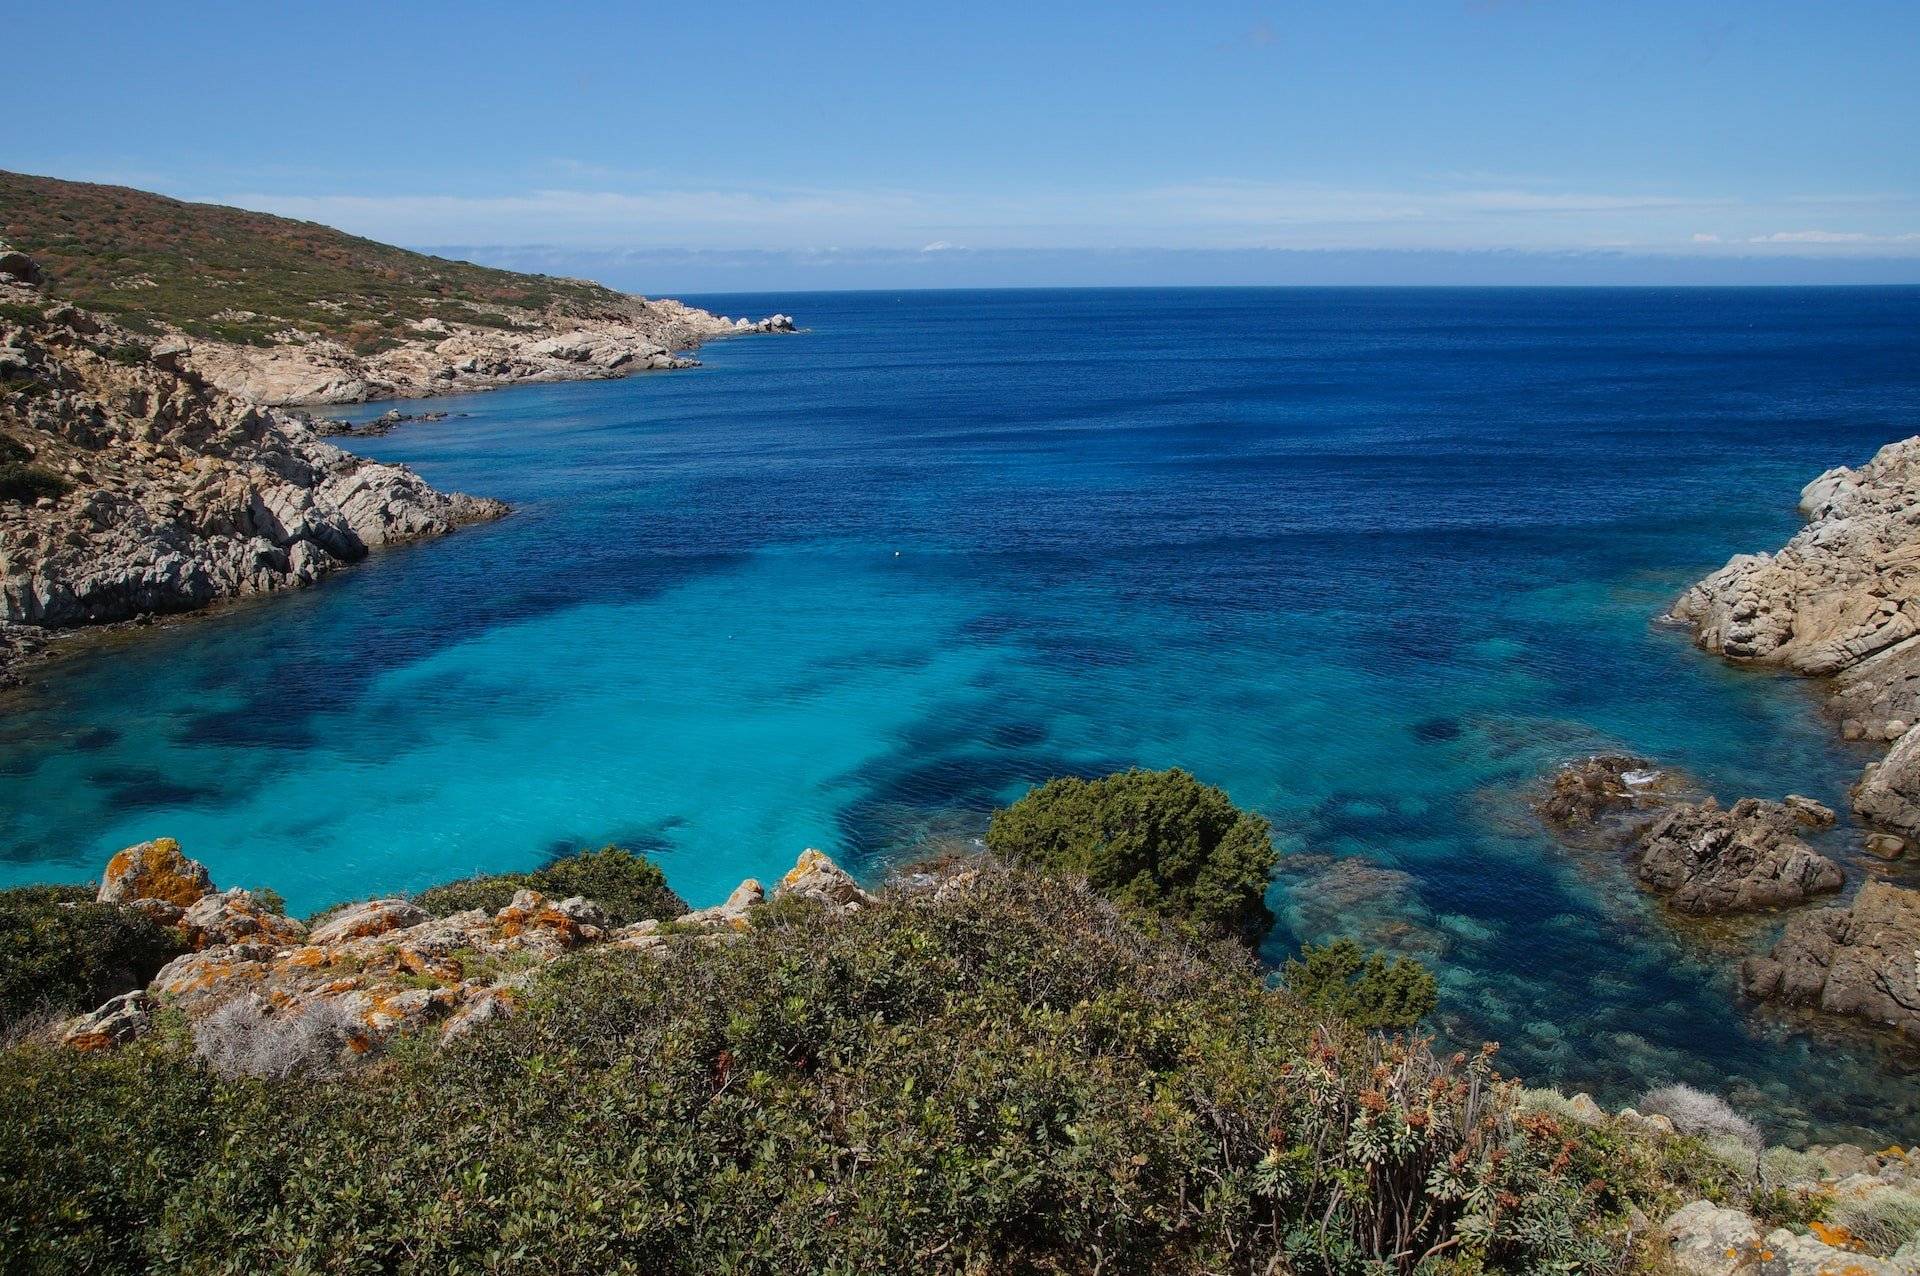 Excursión en Barco en el Parque Nacional de Asinara